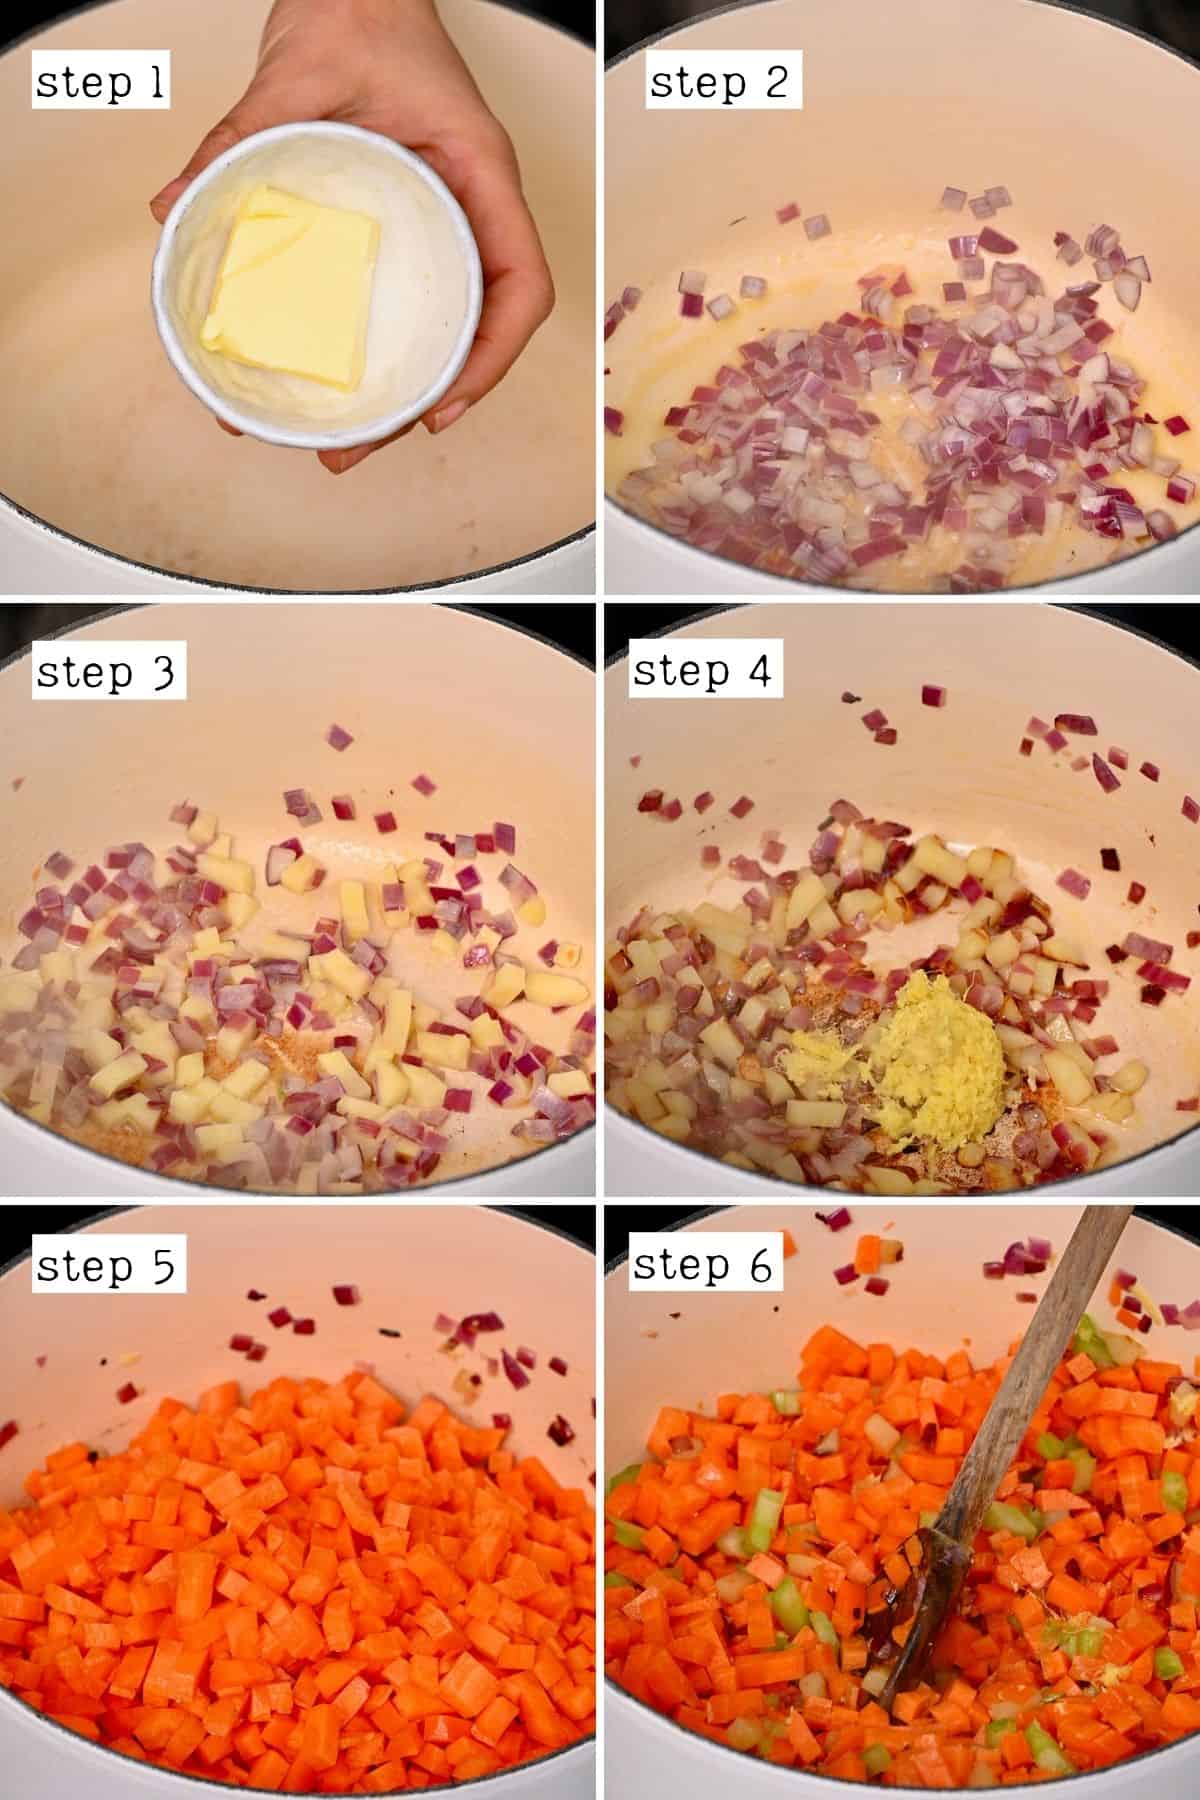 Steps for preparing carrot ginger soup base